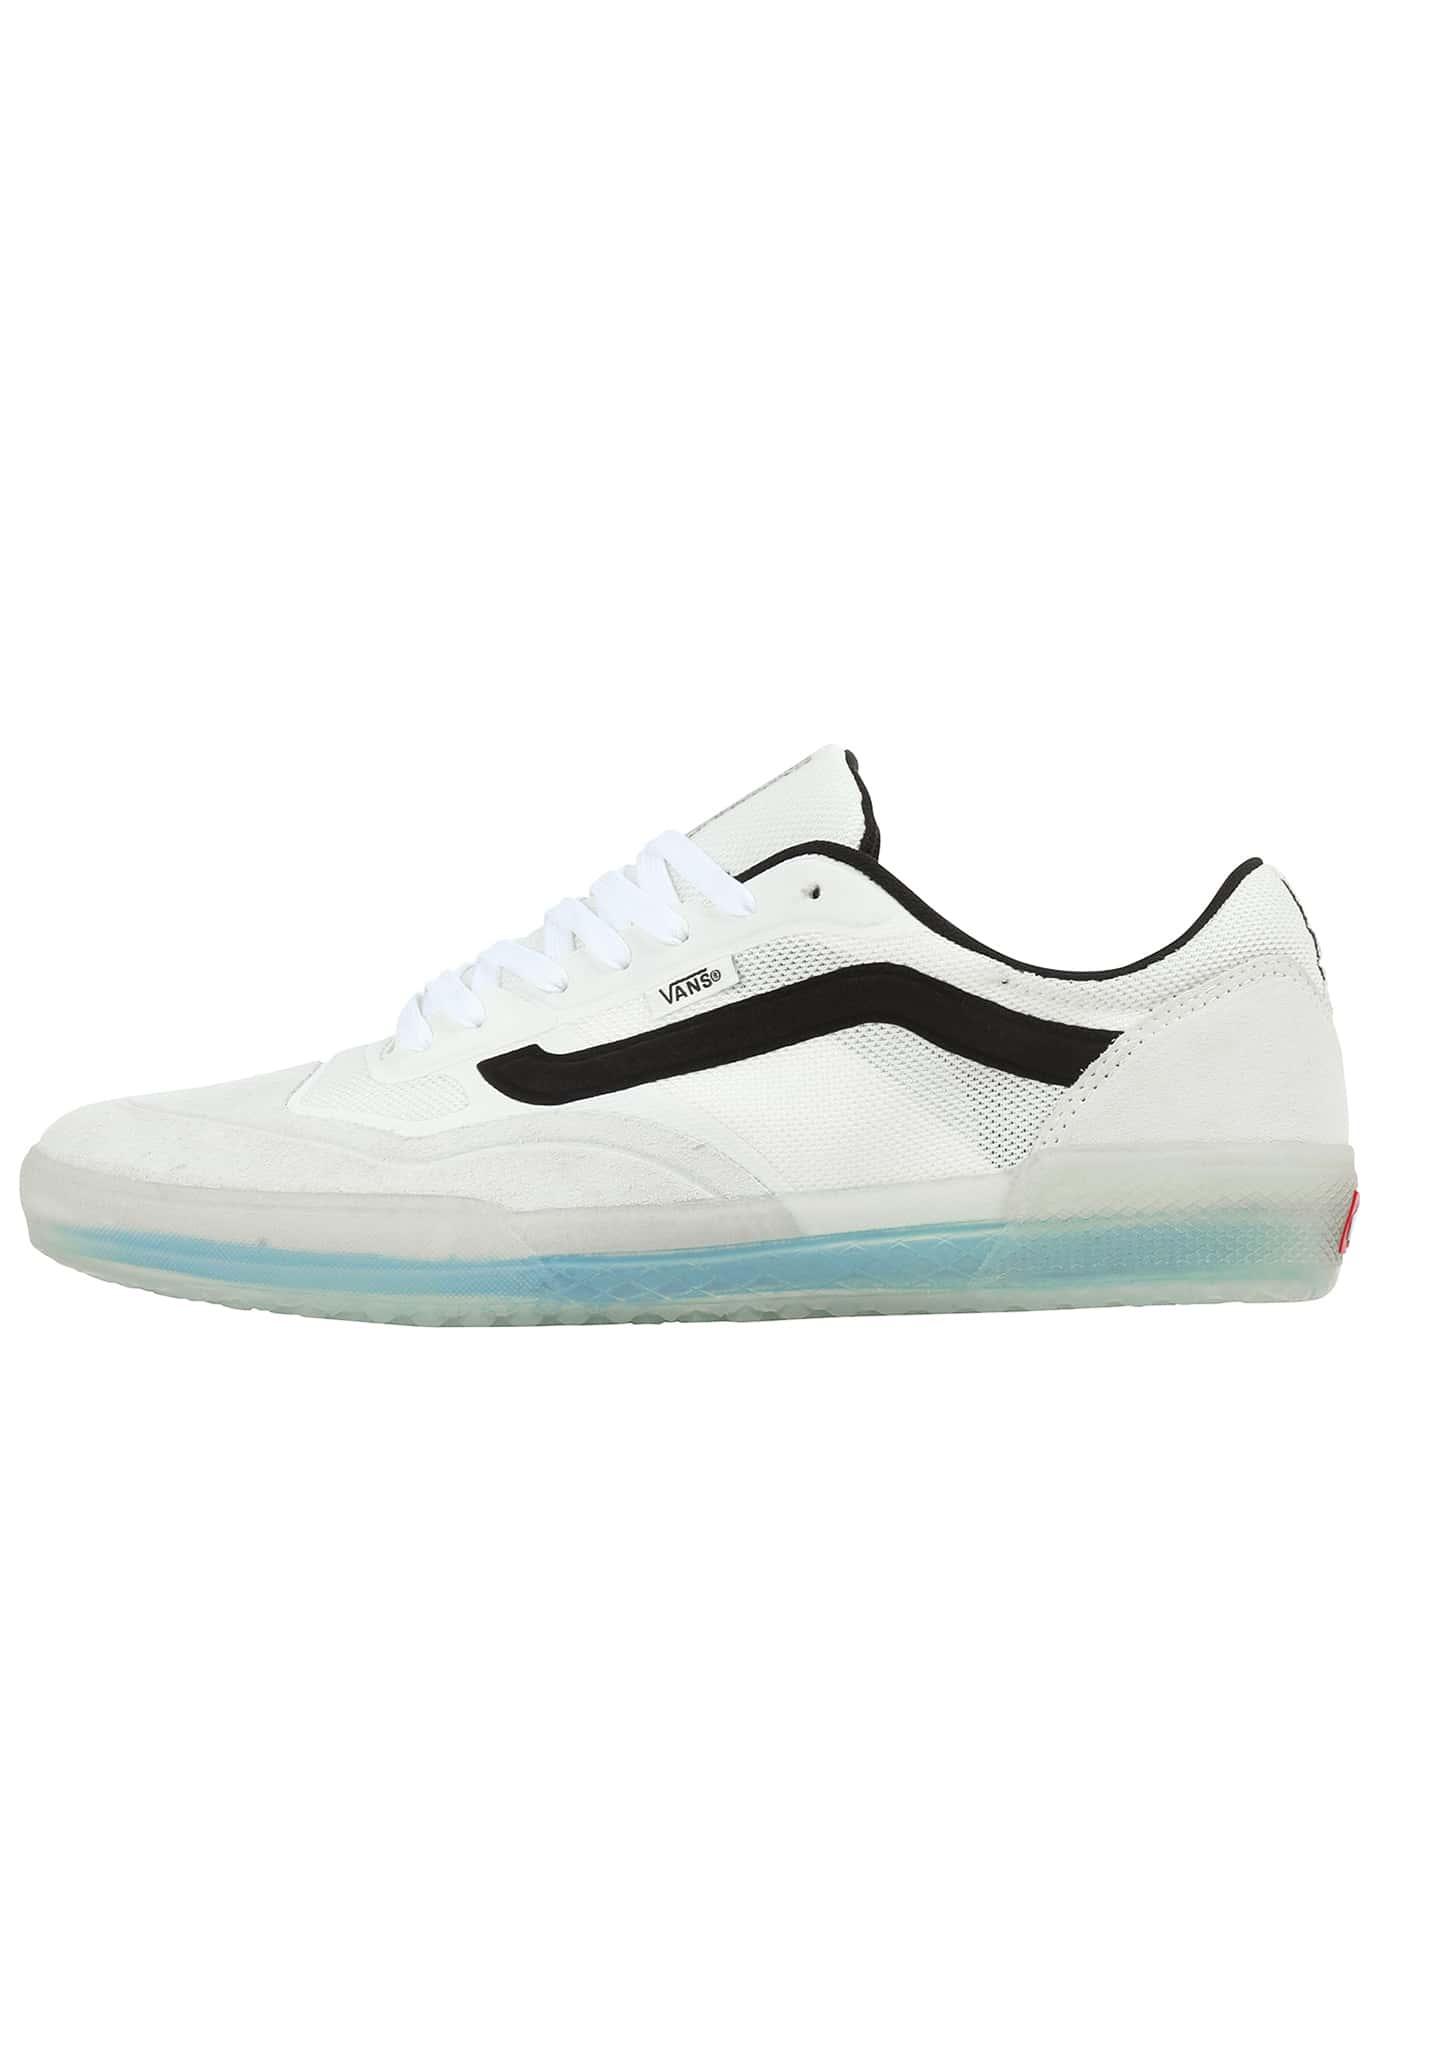 Vans Ave Pro Sneaker weiß/schwarz 40,5